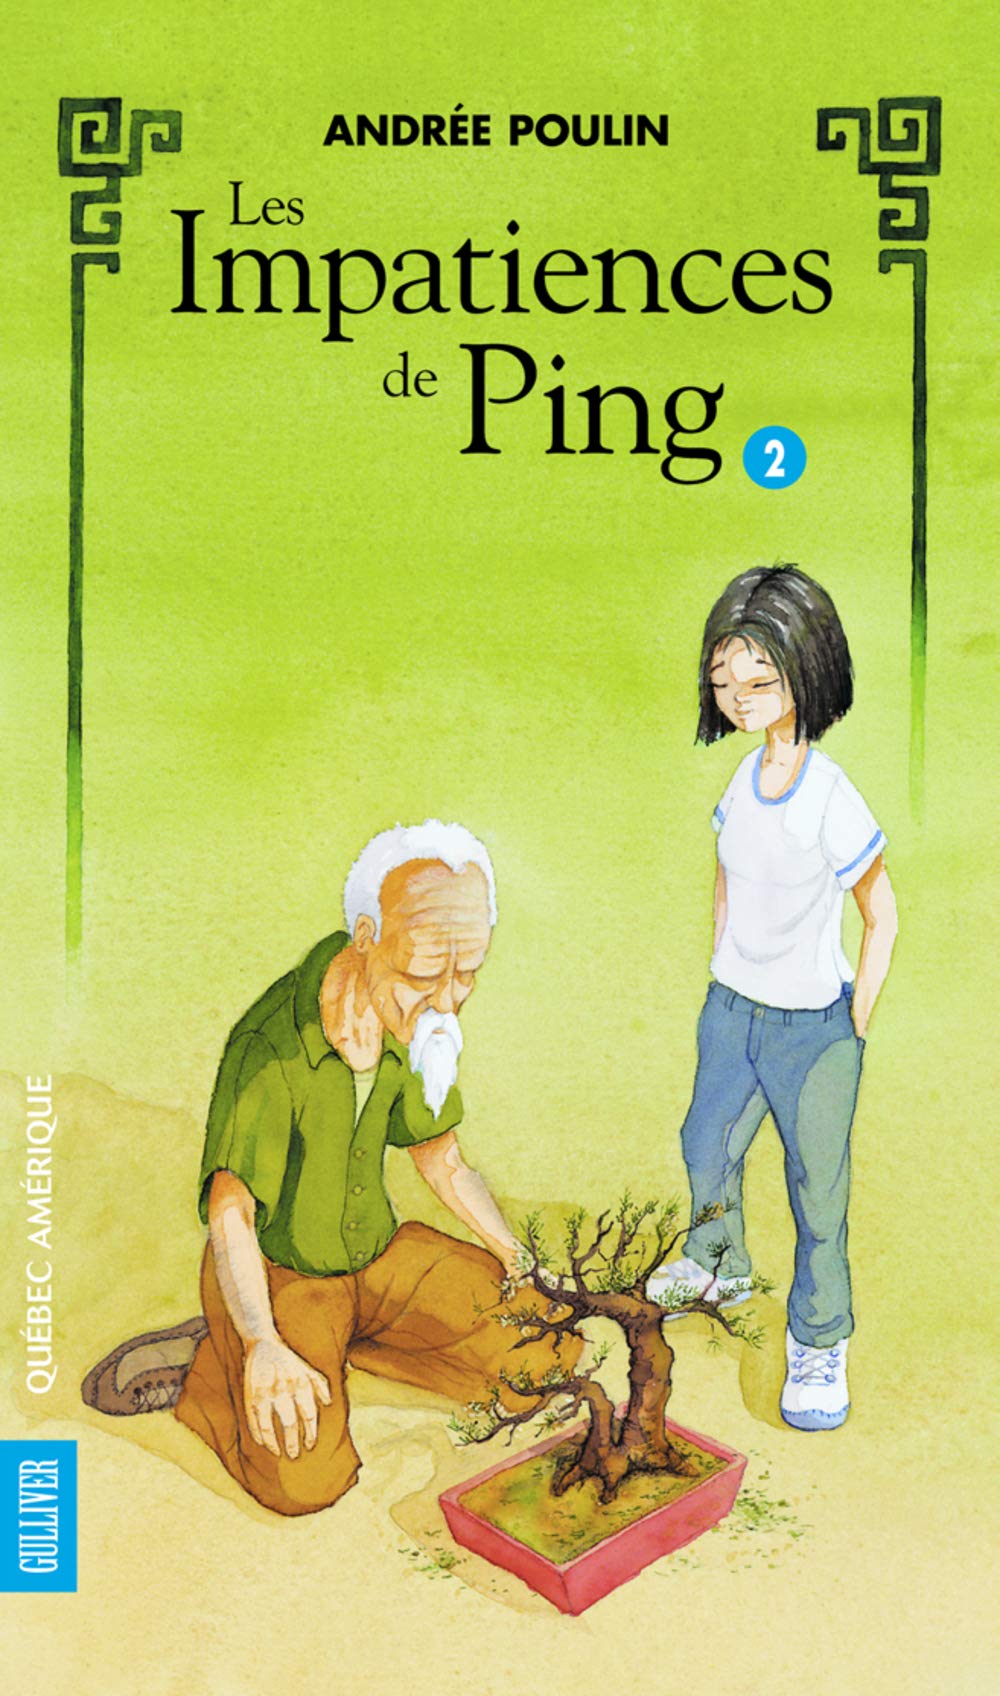 Livre ISBN 2764403879 Les impatiences de Ping # 2 (Andrée Poulin)